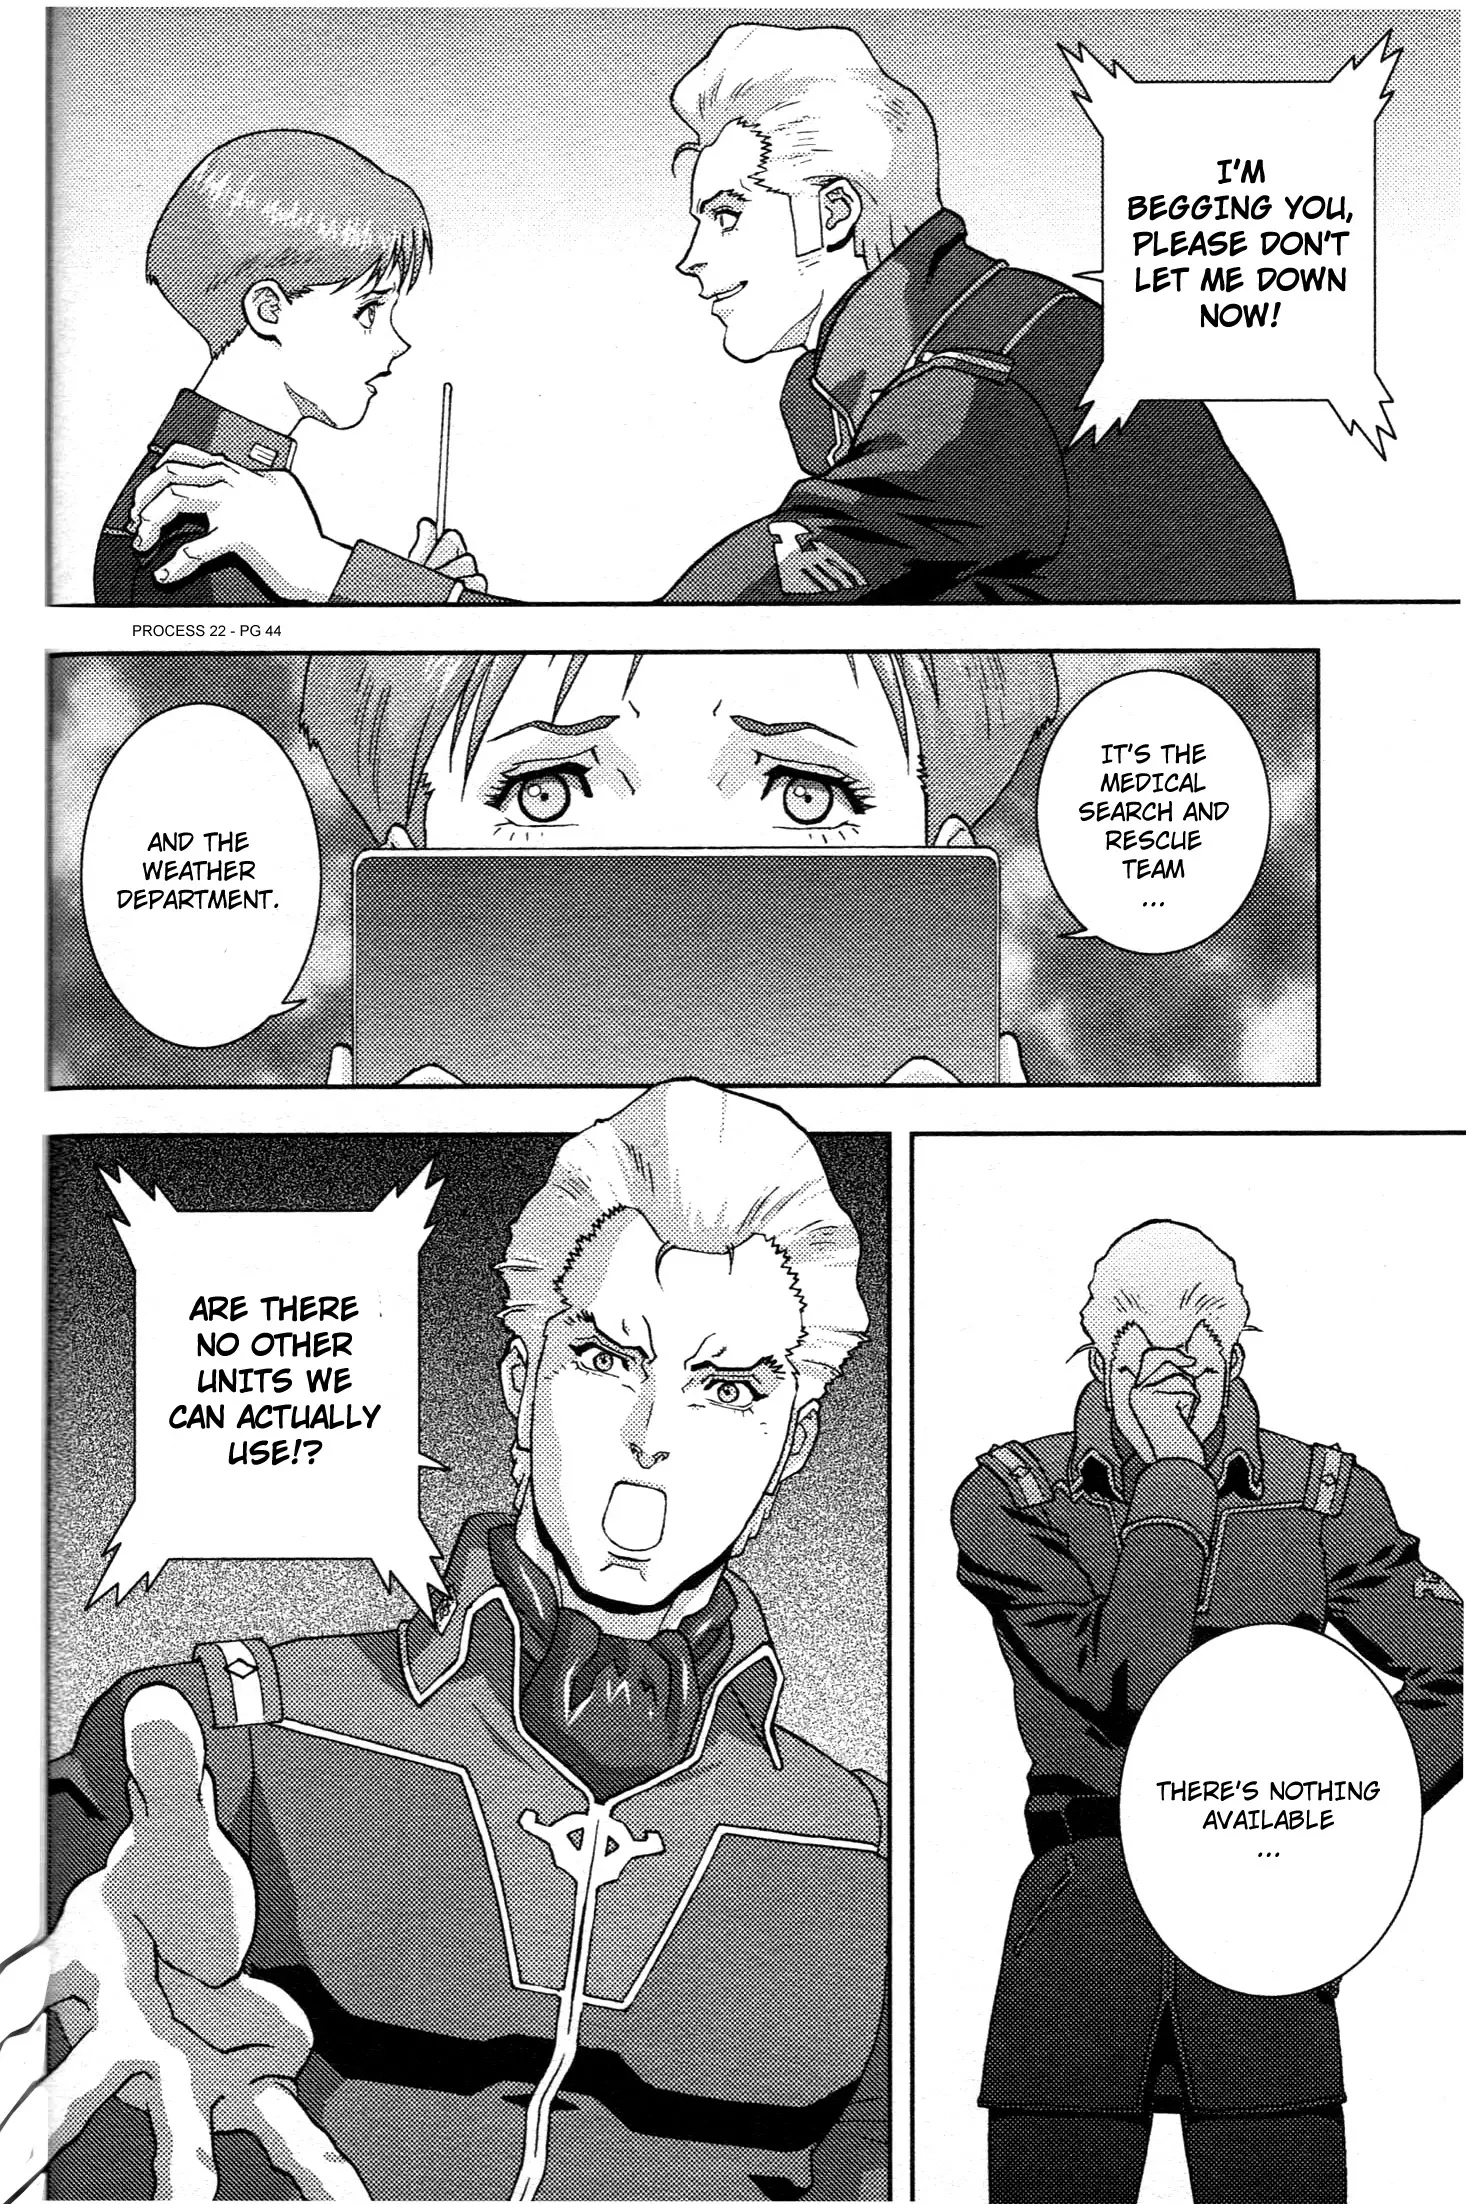 Mobile Suit Zeta Gundam - Define - 71 page 42-6e0524e0